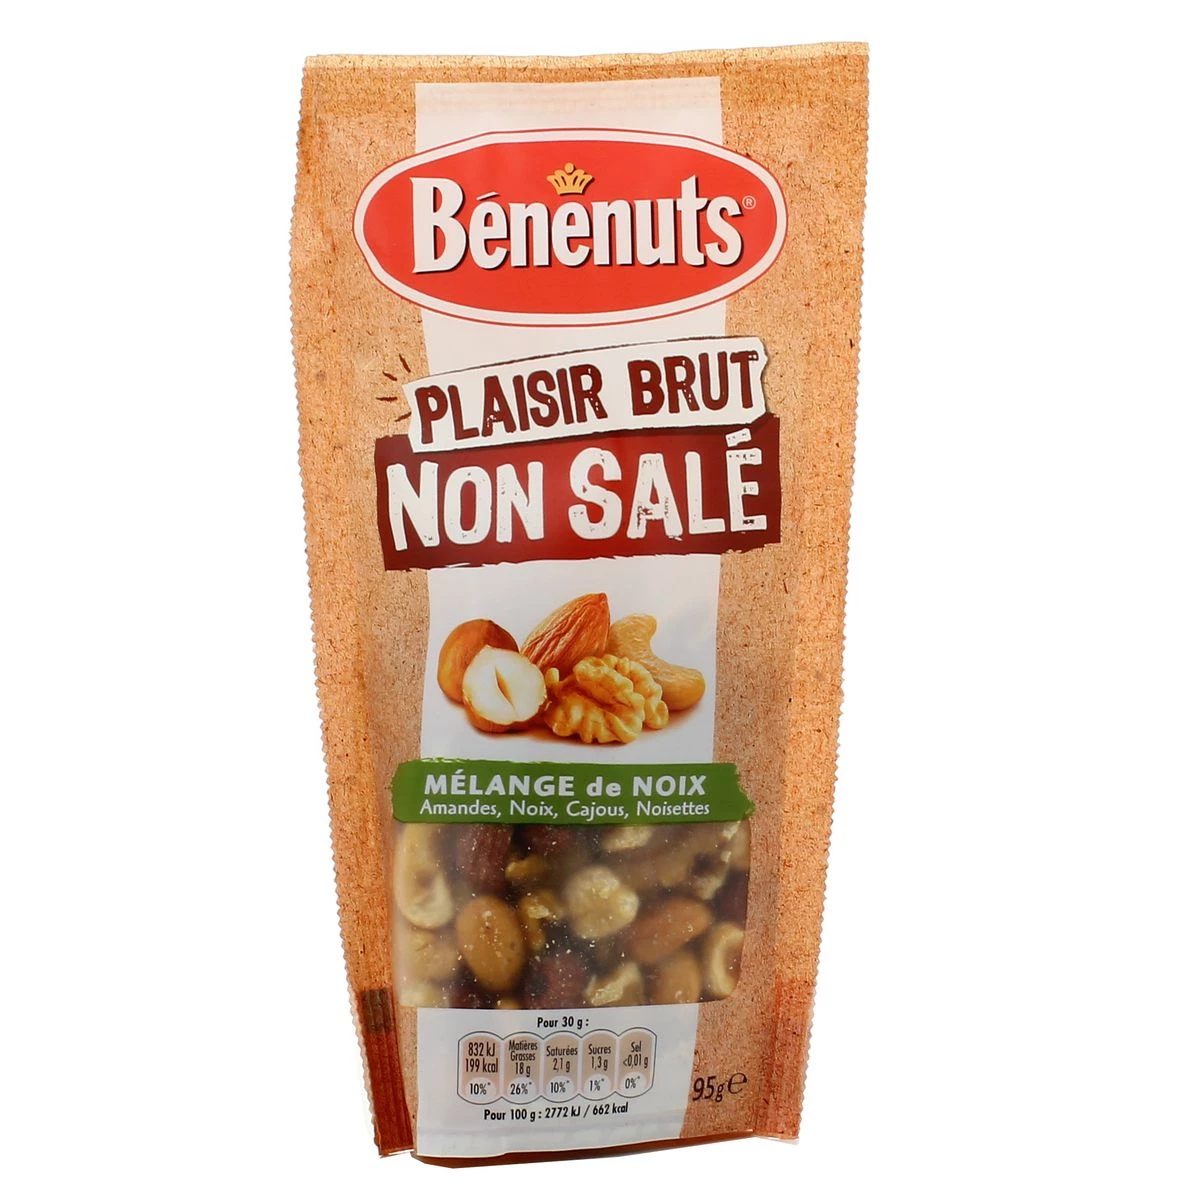 Plaisir brut non salé mélange de noix 95g - BENENUTS